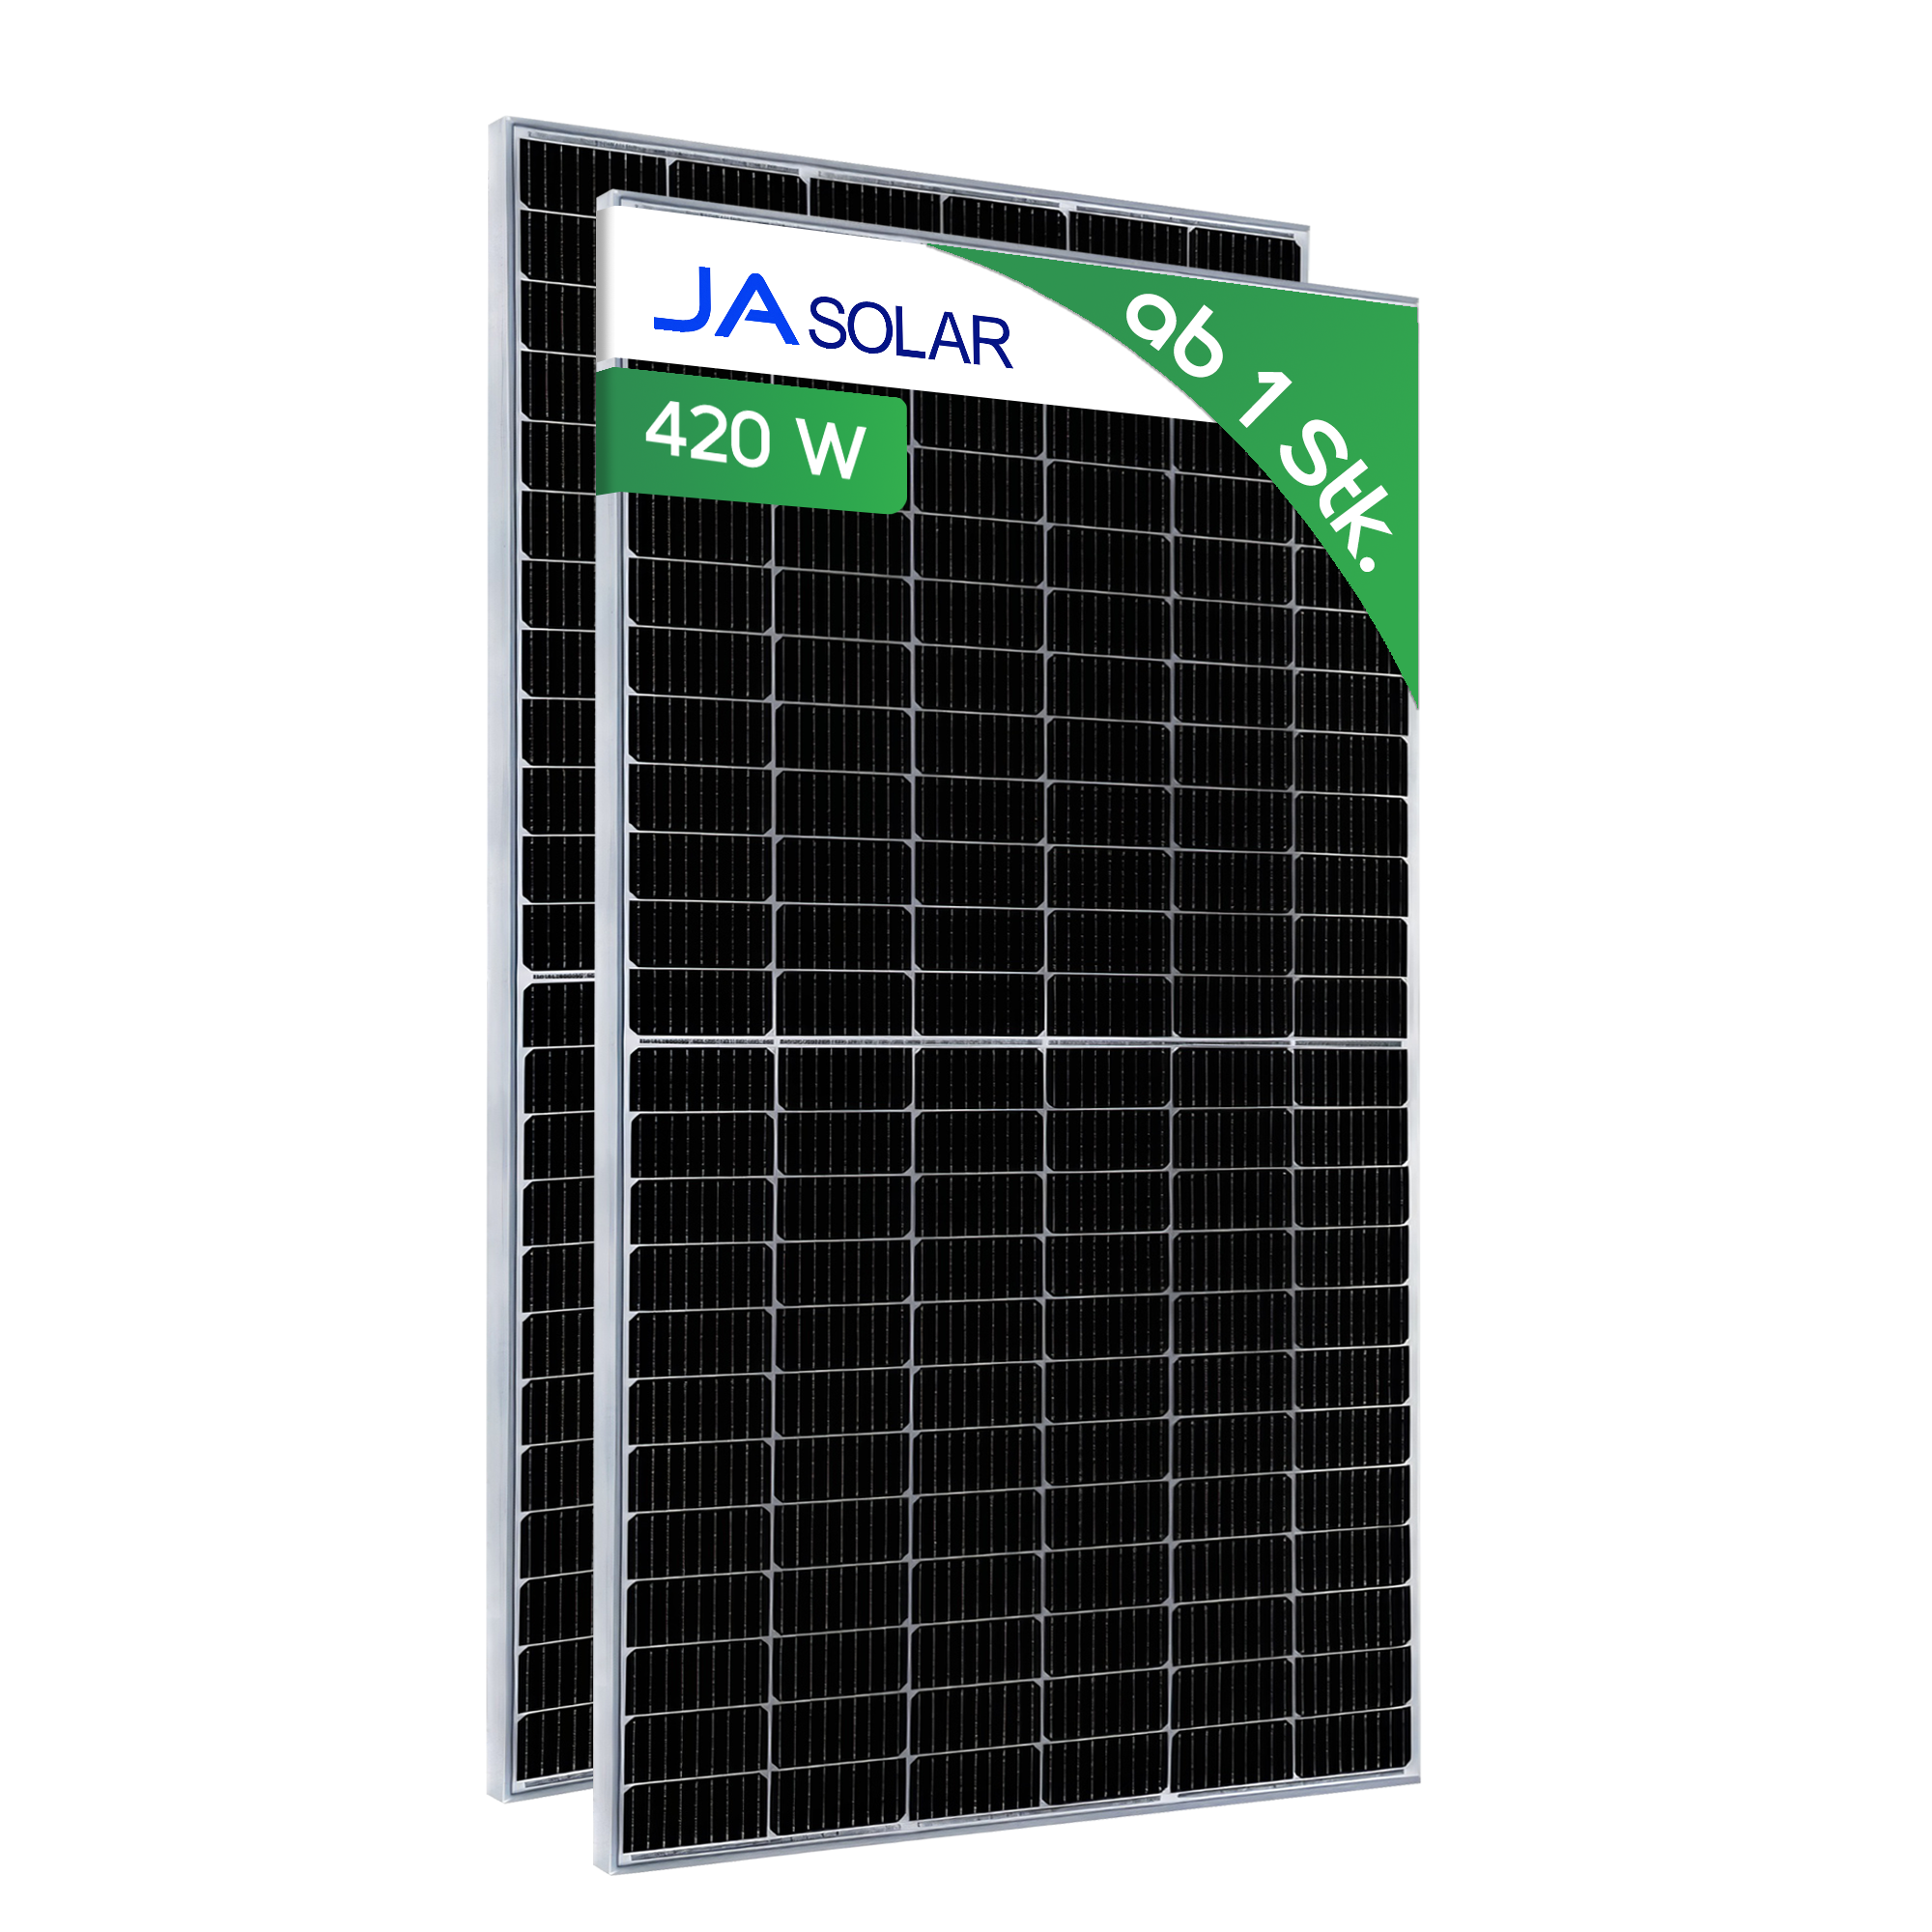 420W JA Solar JAM54S30-420/LR solar module SILVER FRAME